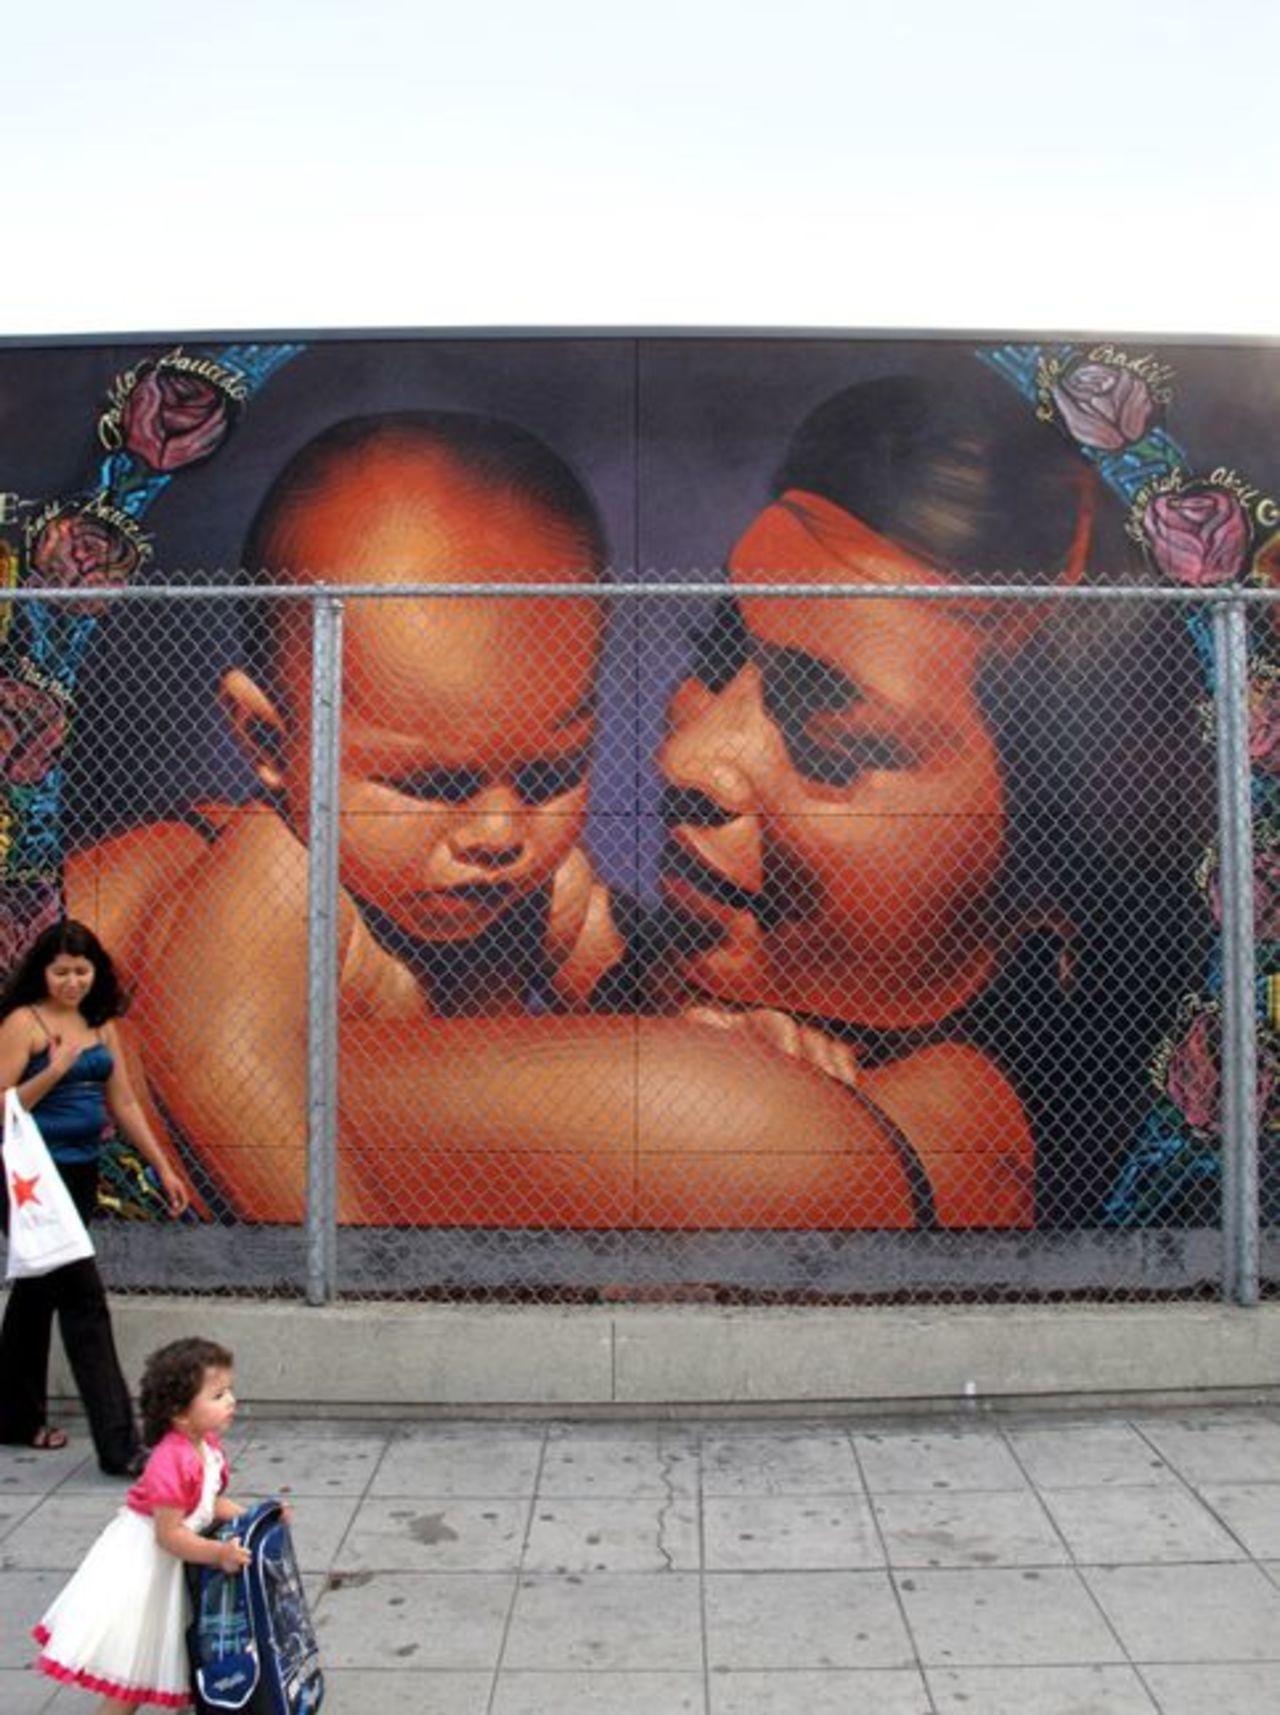 A mother's Love • #streetart #graffiti #art #funky #dope . : http://t.co/y1r6ECkOSY